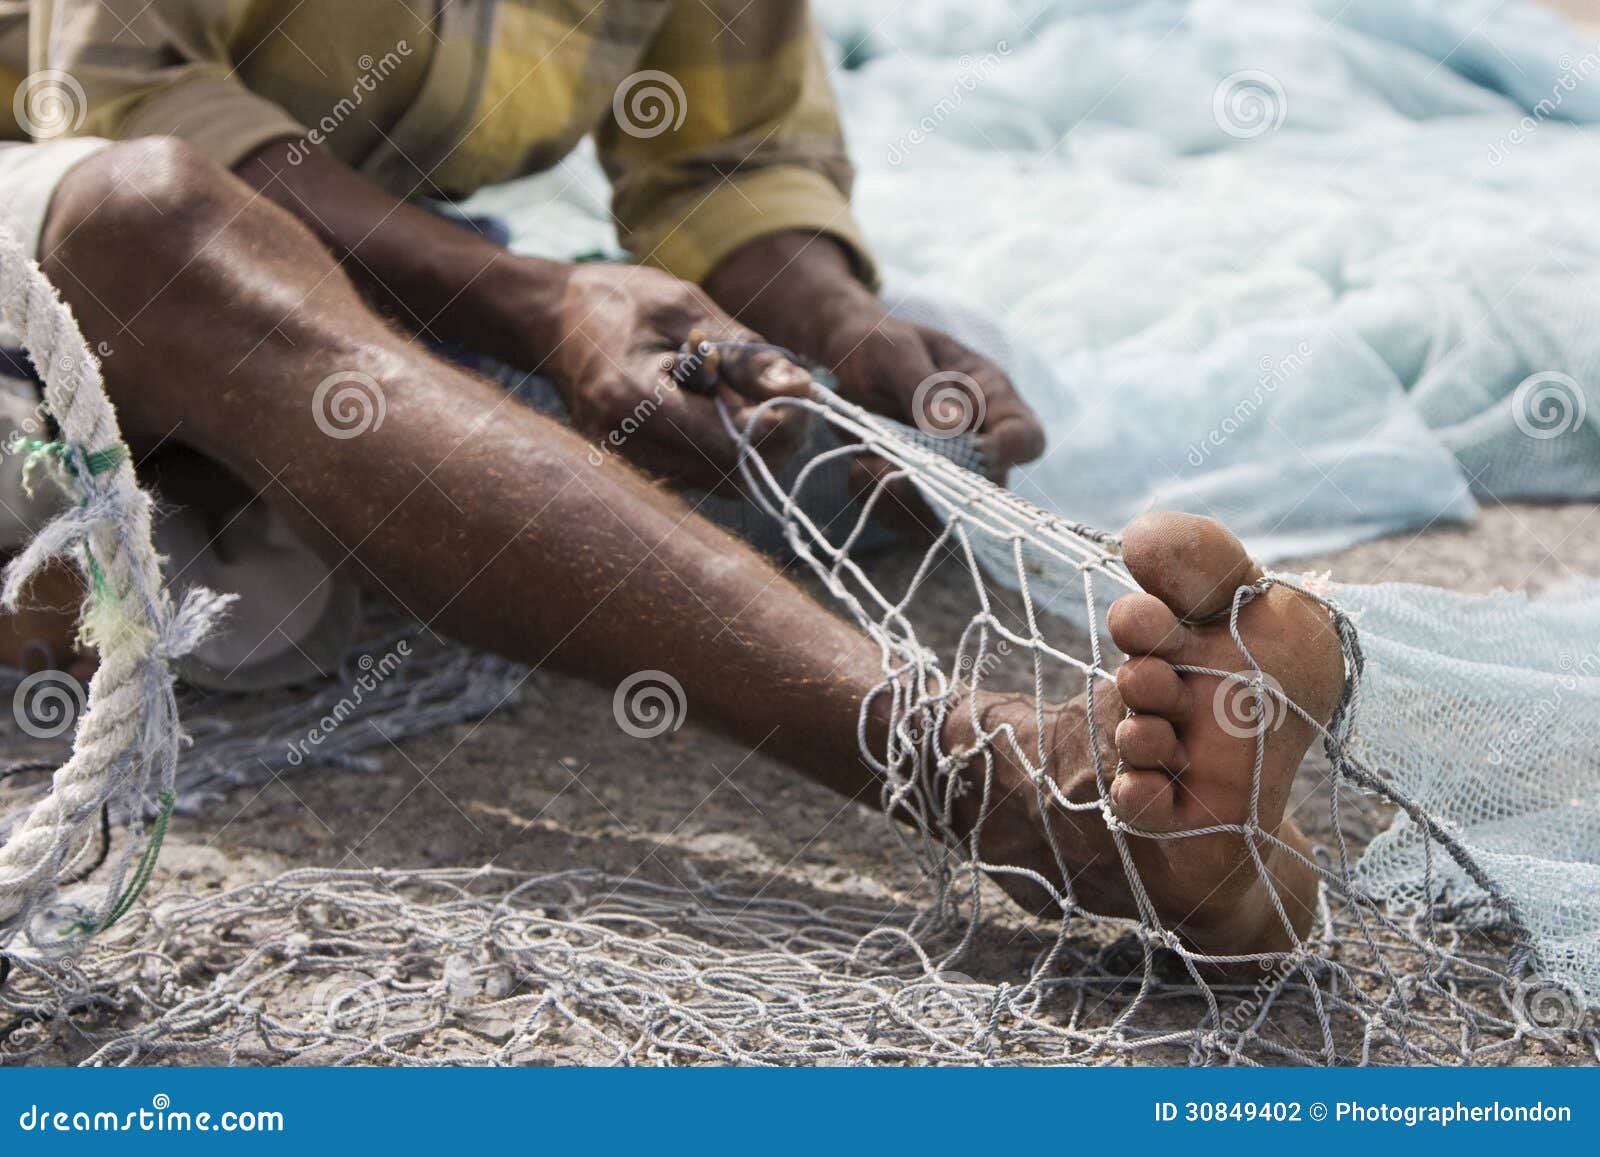 fujairah uae a local fisherman fixes holes and tangles in his net in fujairah.